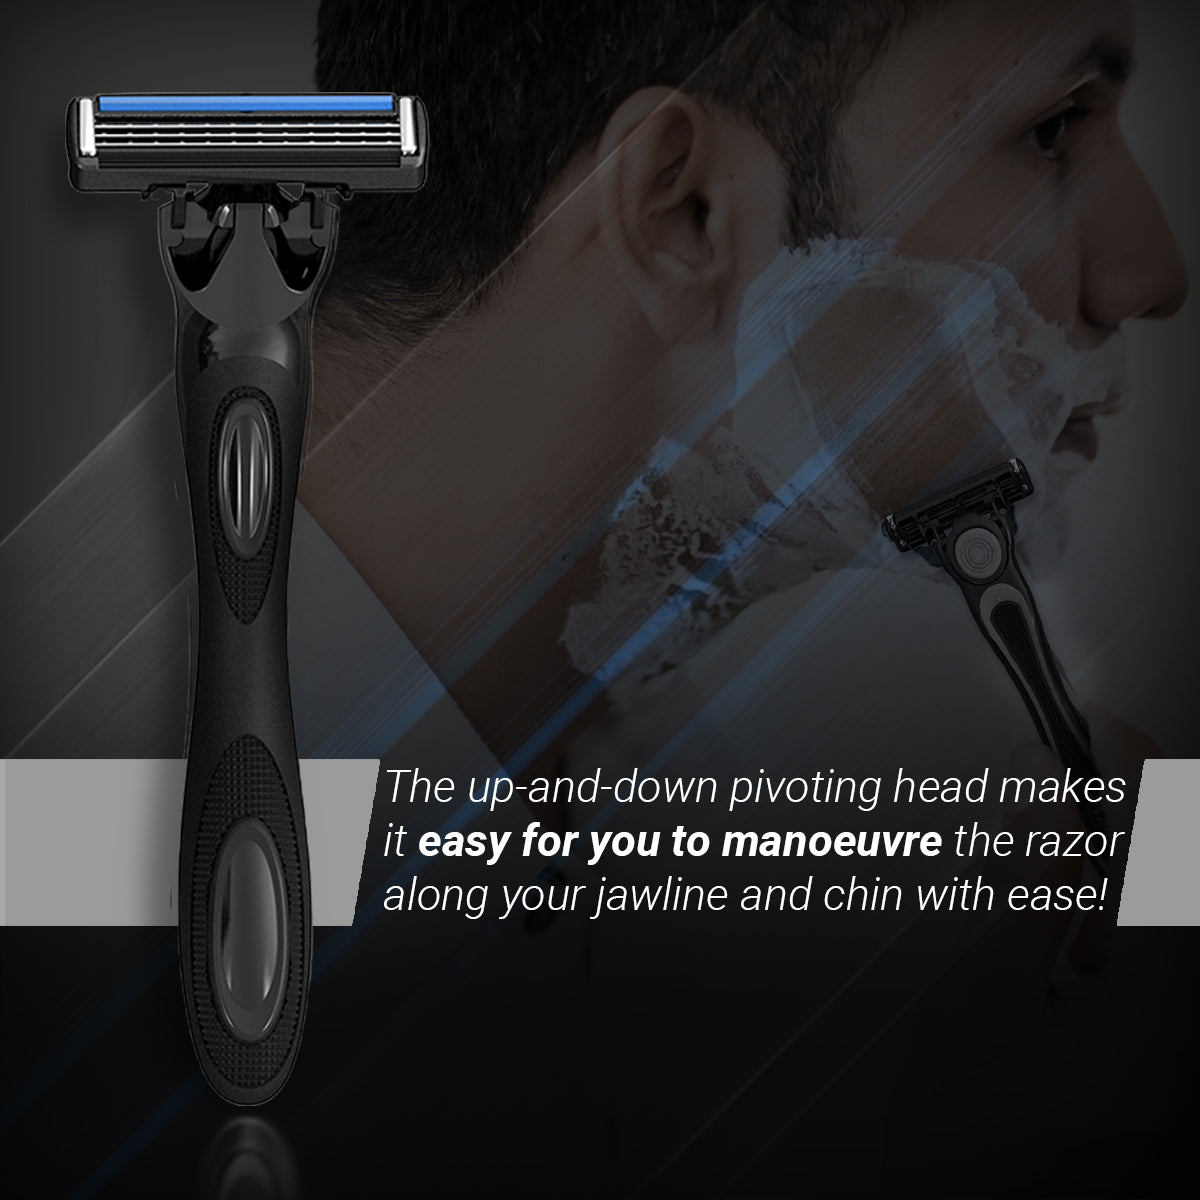 Zlade HyperGlide3 Advanced Shaving System for Men - 1 Razor Handle + 4 Cartridges